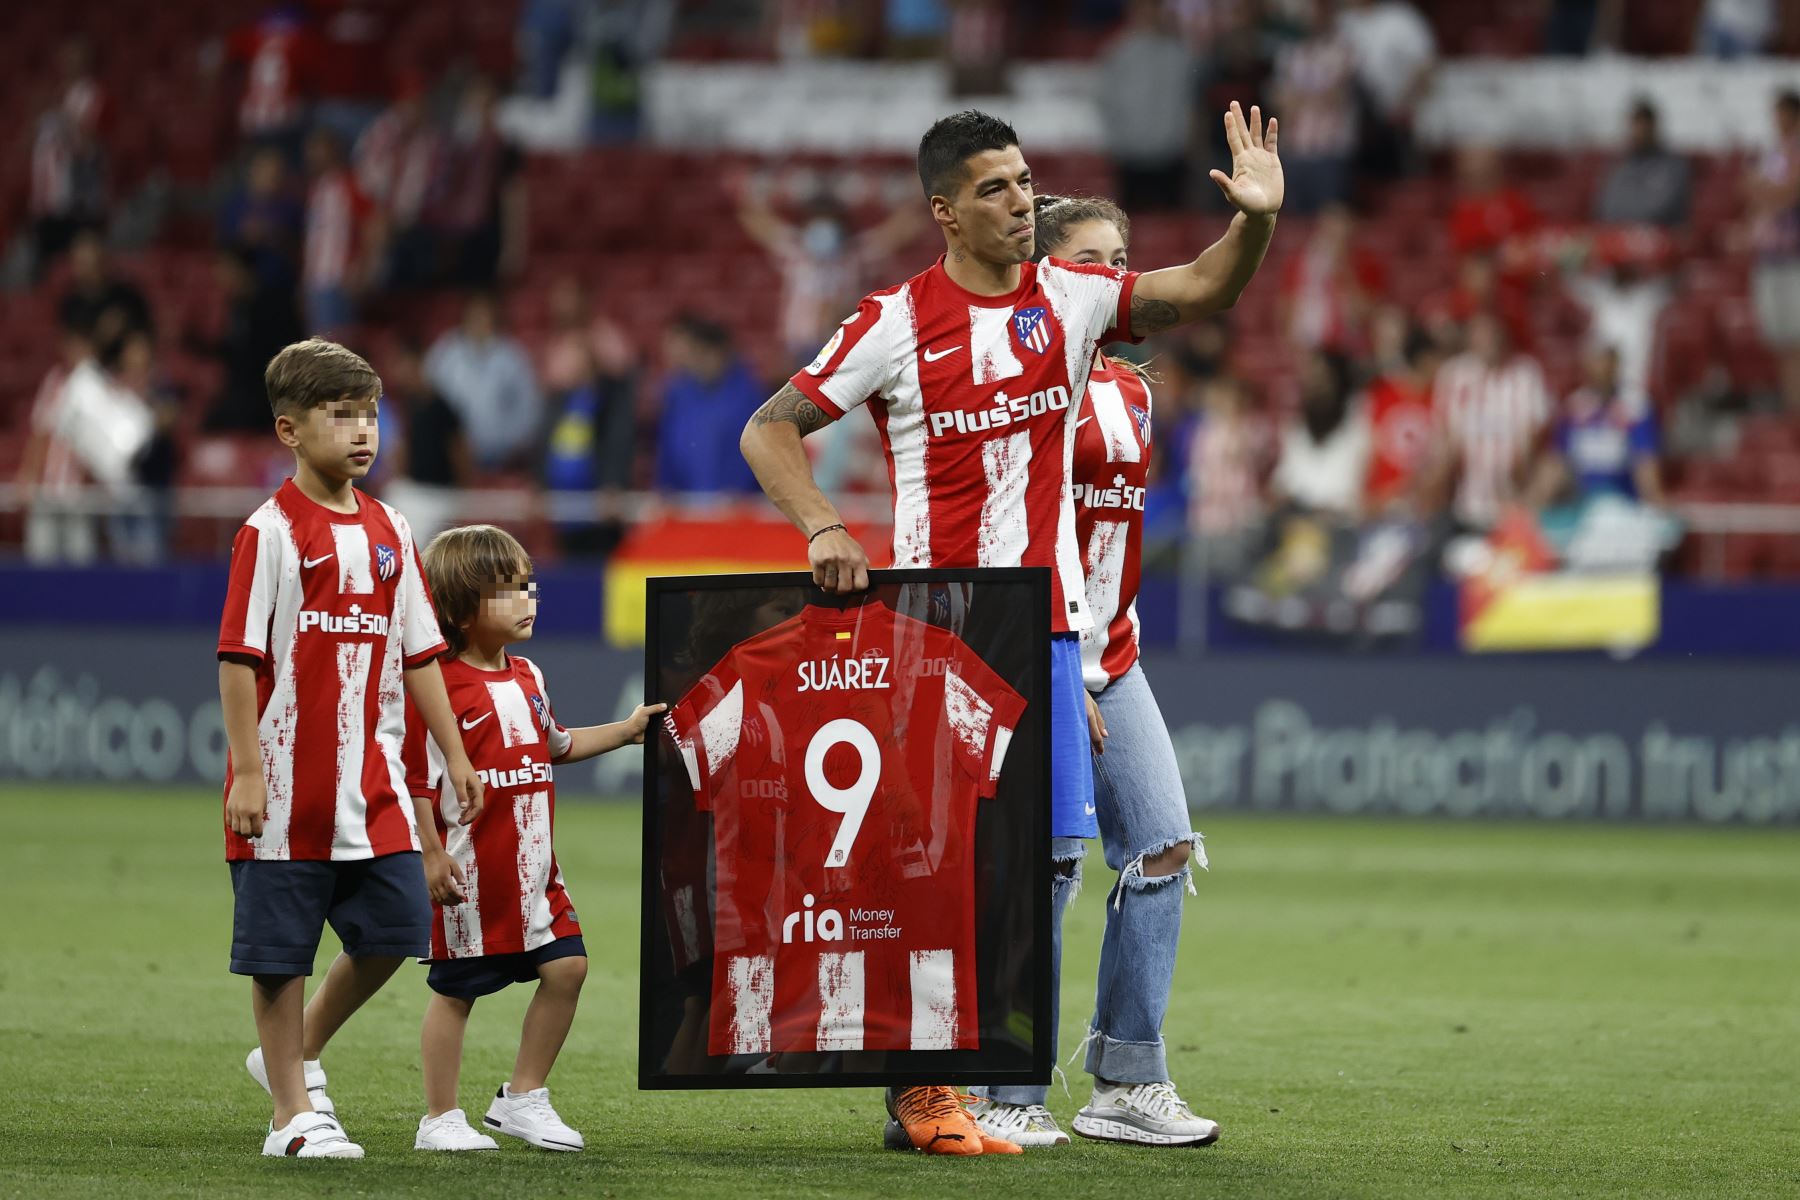 El delantero uruguayo del Atlético de Madrid, Luis Suárez, junto a sus hijos, se despide de la afición al término del partido correspondiente a la jornada 37 de primera división, en el Wanda Metropolitano. Foto: EFE